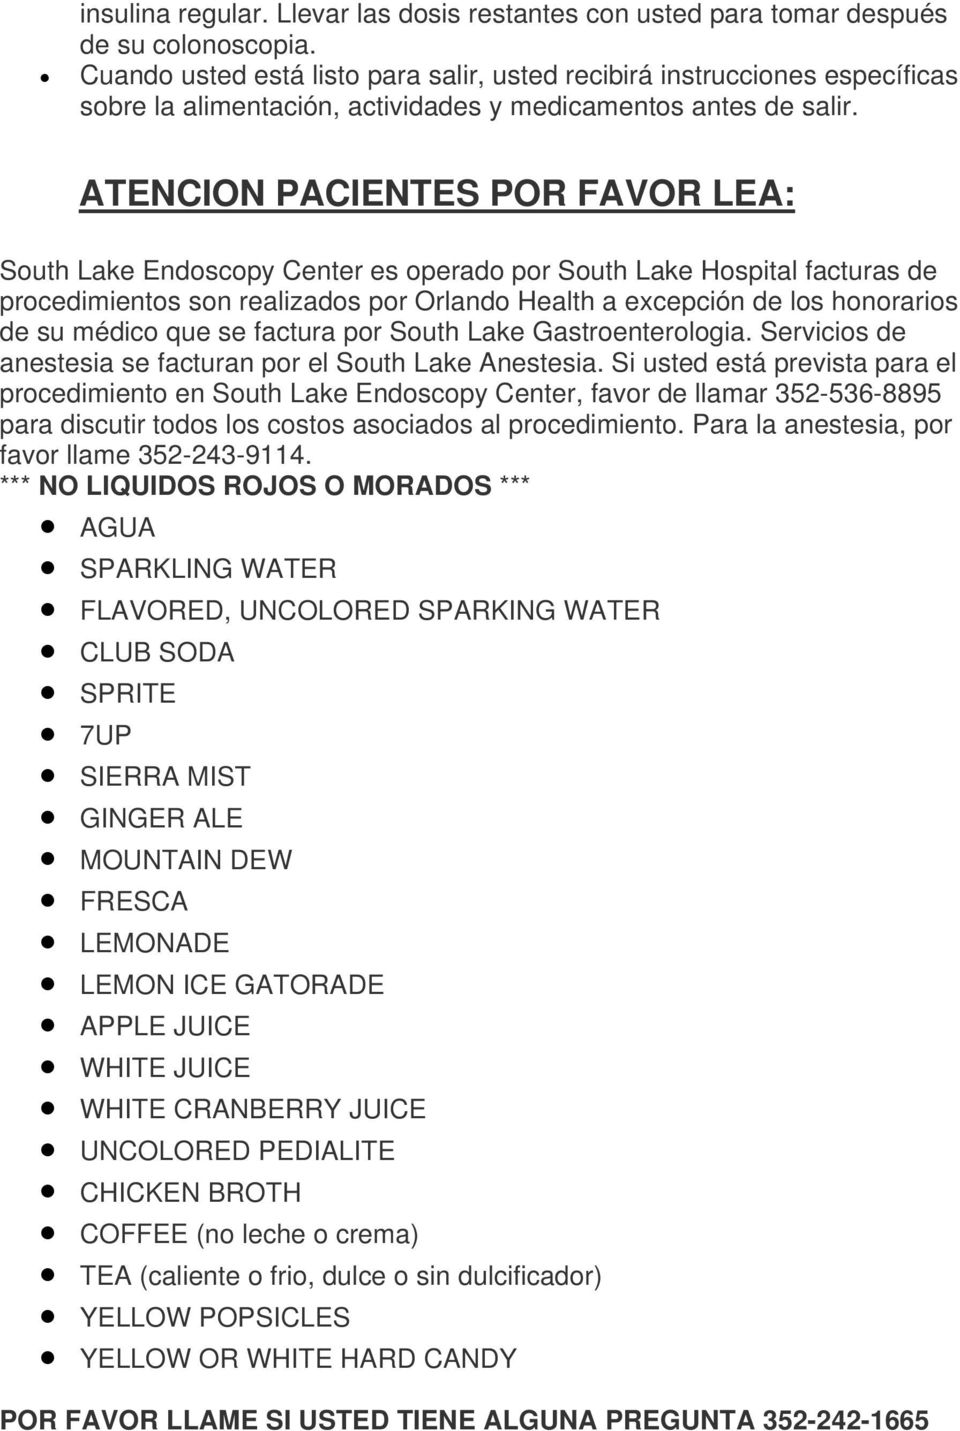 ATENCION PACIENTES POR FAVOR LEA: South Lake Endoscopy Center es operado por South Lake Hospital facturas de procedimientos son realizados por Orlando Health a excepción de los honorarios de su